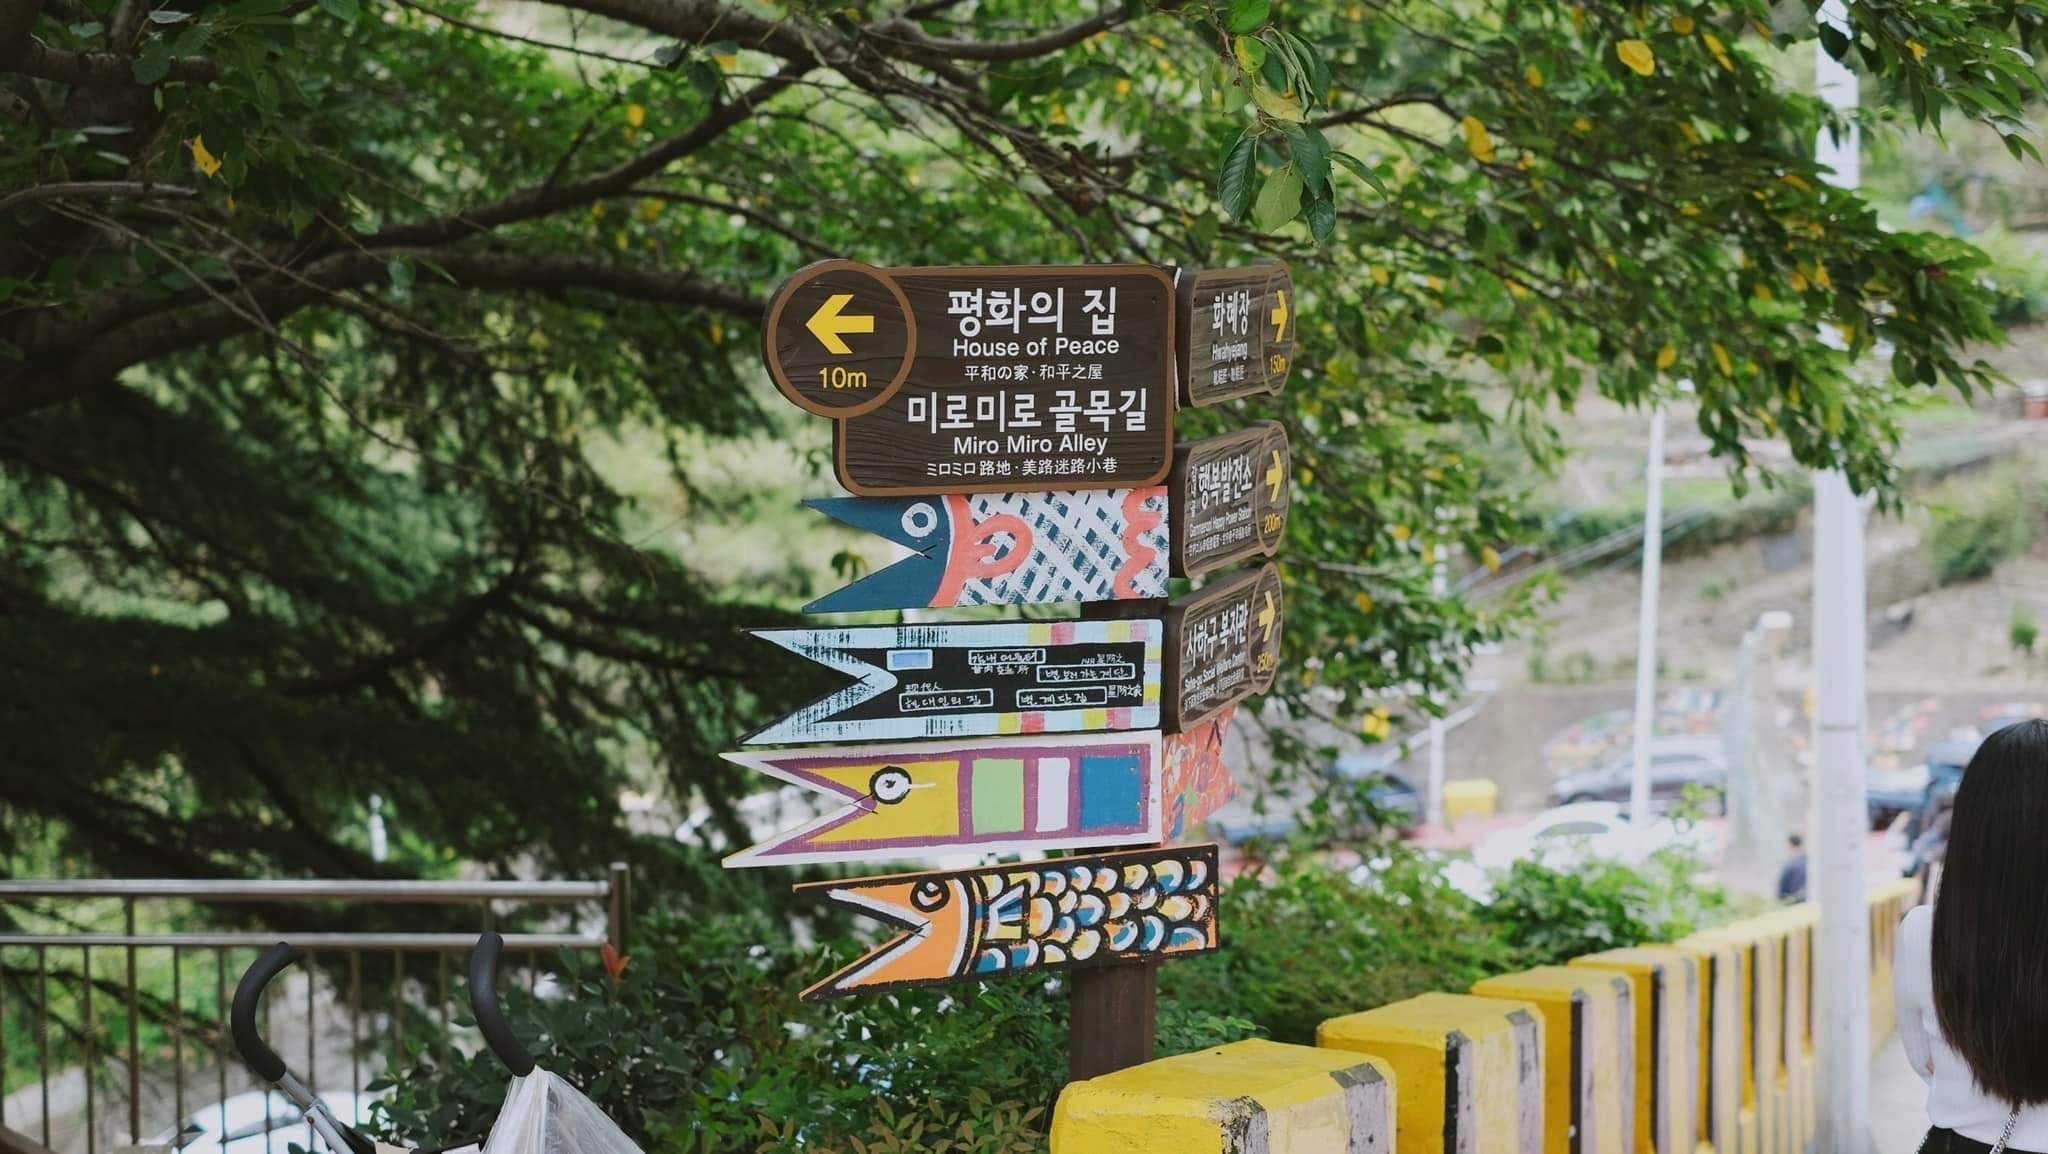 lang-van-hoa-gamcheon-gamcheon-culture-village-alley-1657508974.jpg